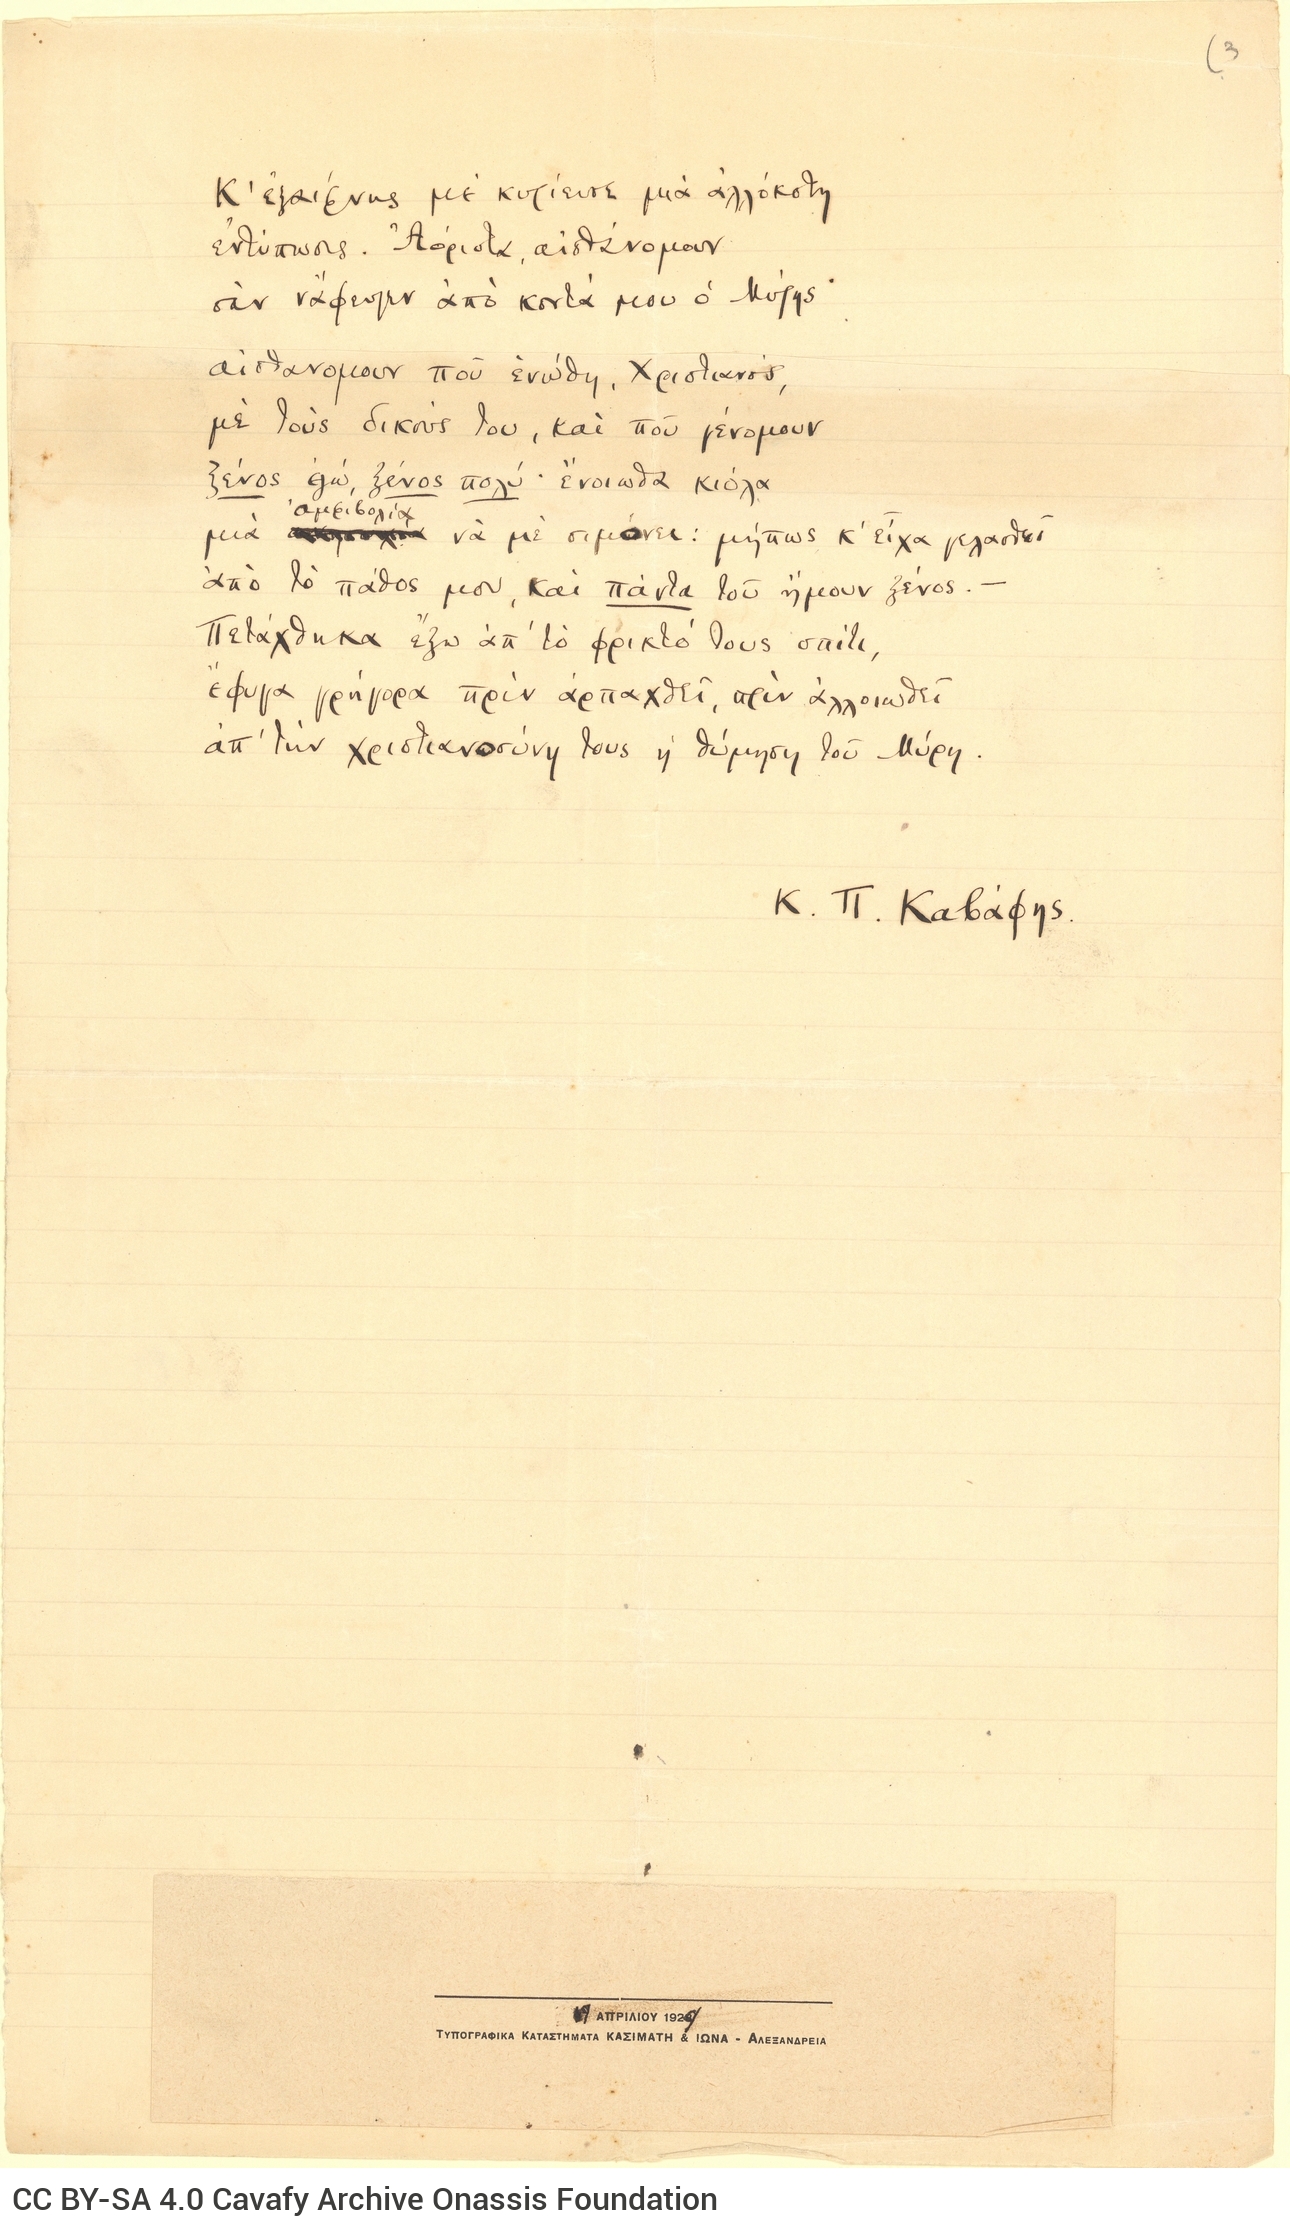 Χειρόγραφο του ποιήματος «Μύρης· Αλεξάνδρεια του 340 μ.Χ.» στο recto τρ